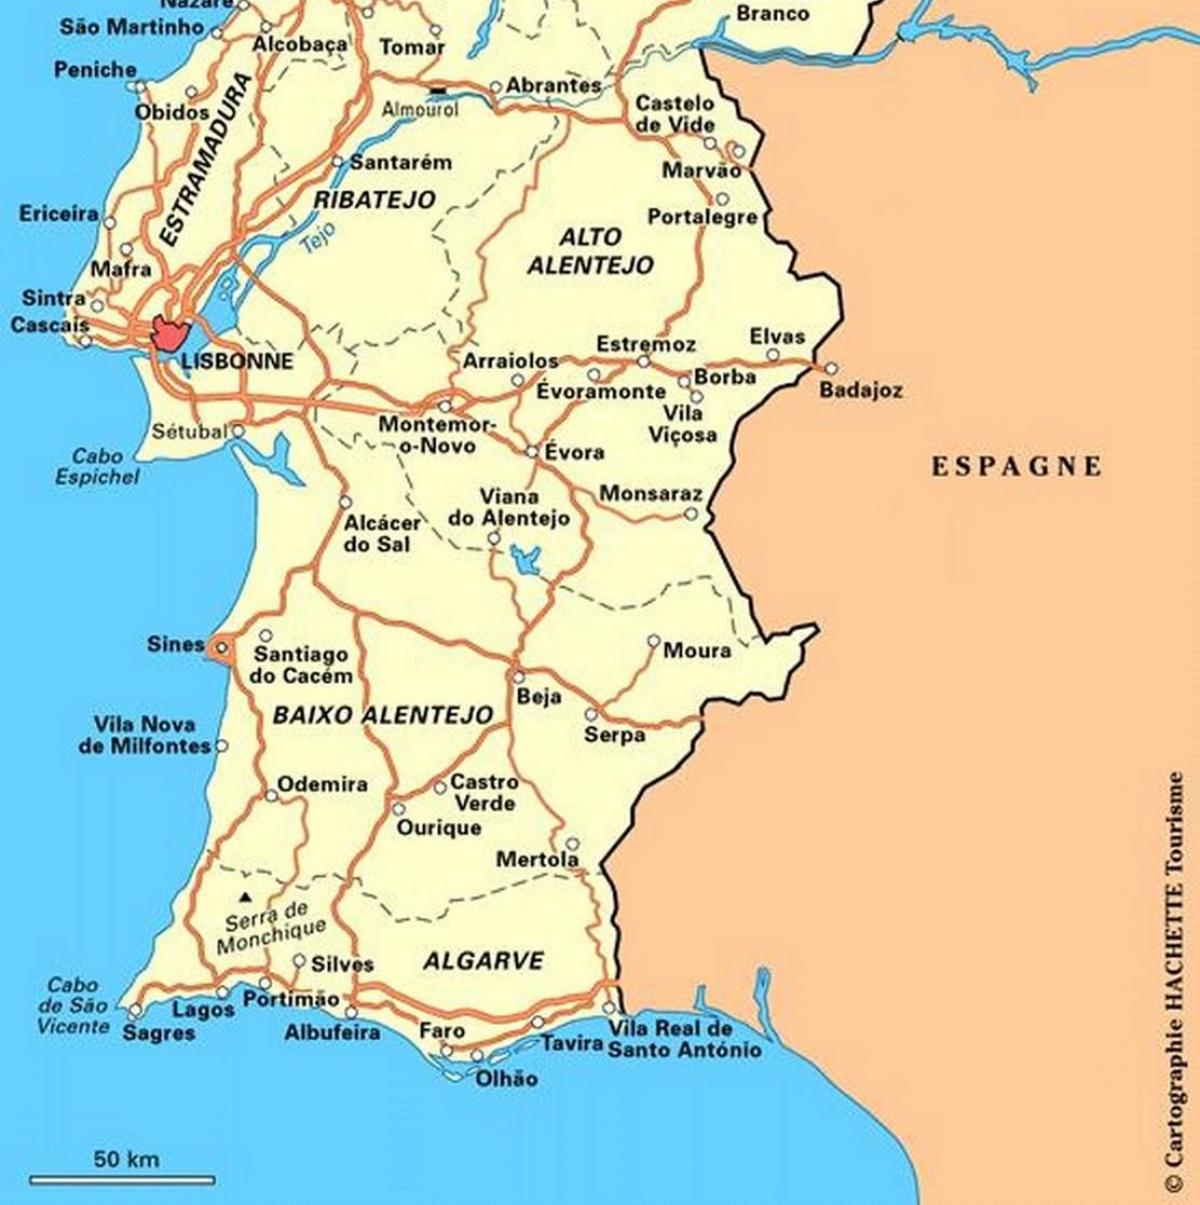 Zuid-Portugalese kaart